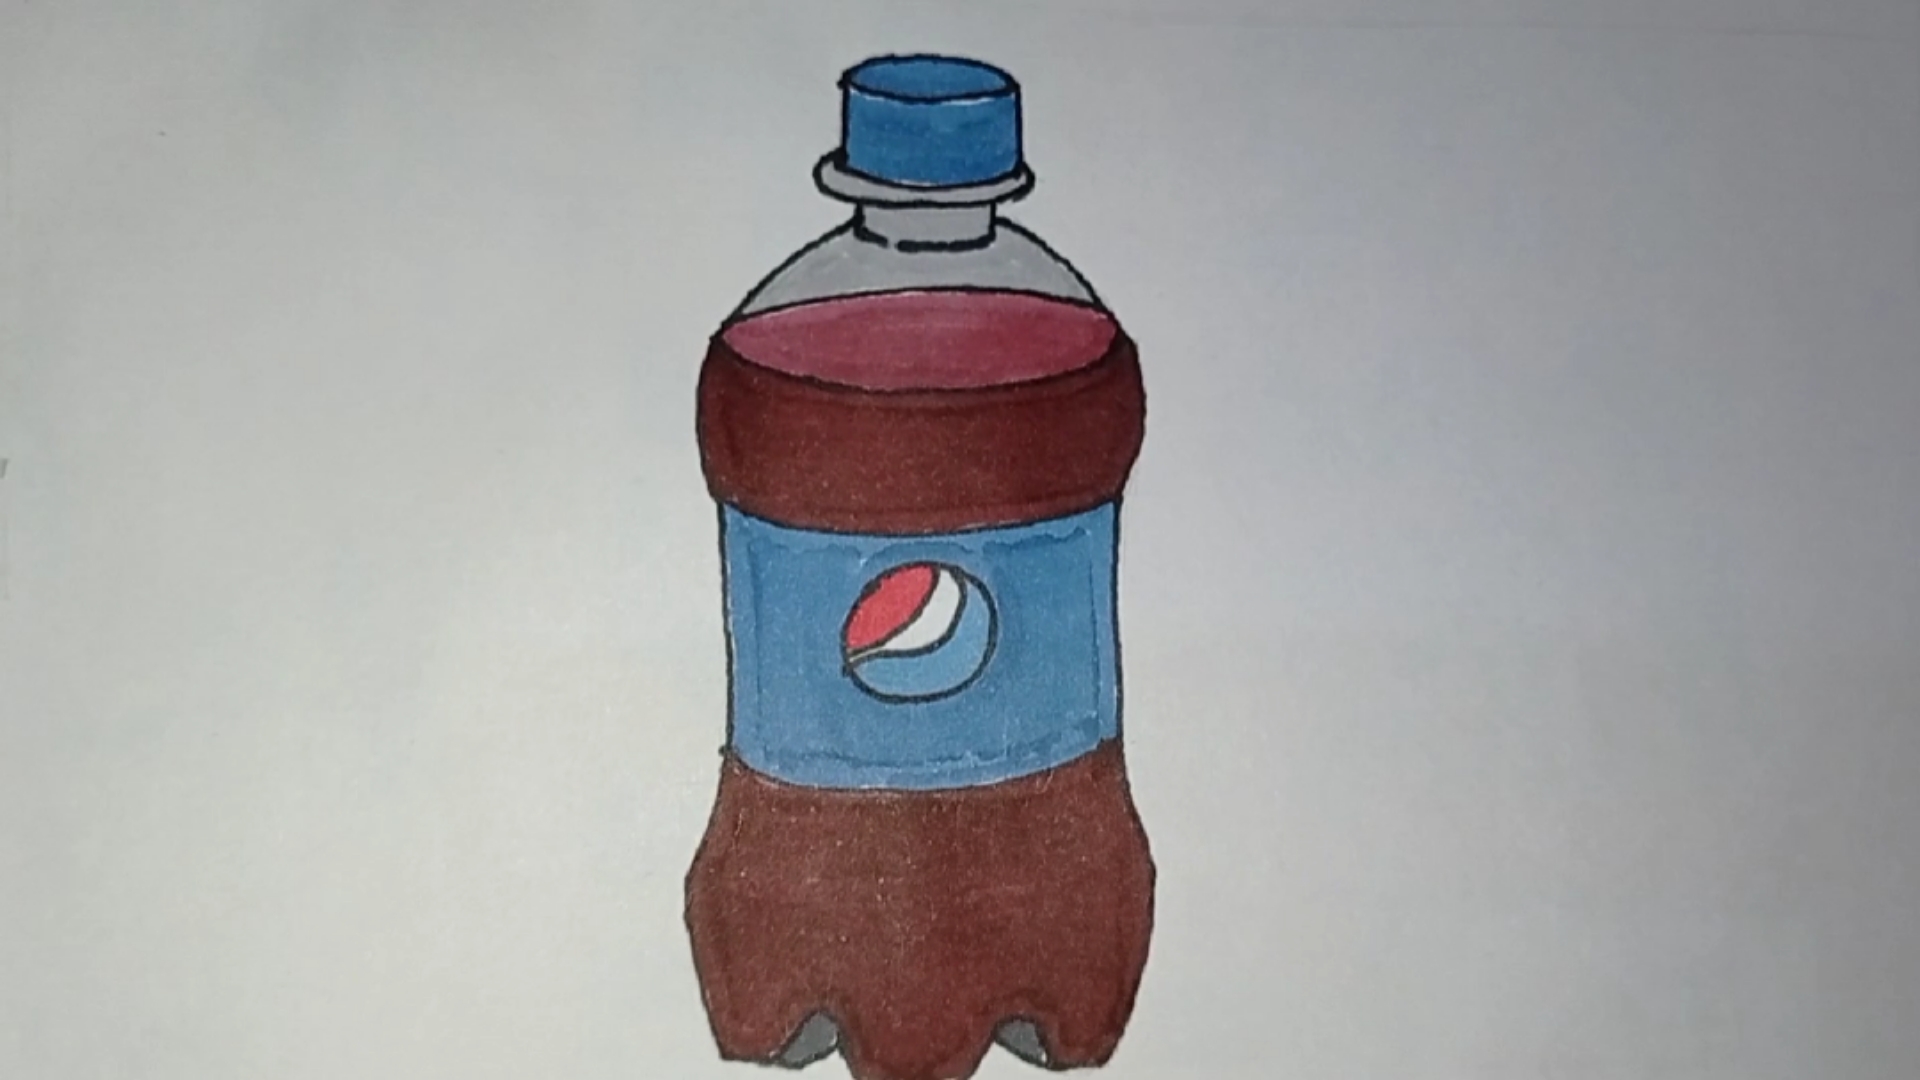 可乐的简笔画简单图片